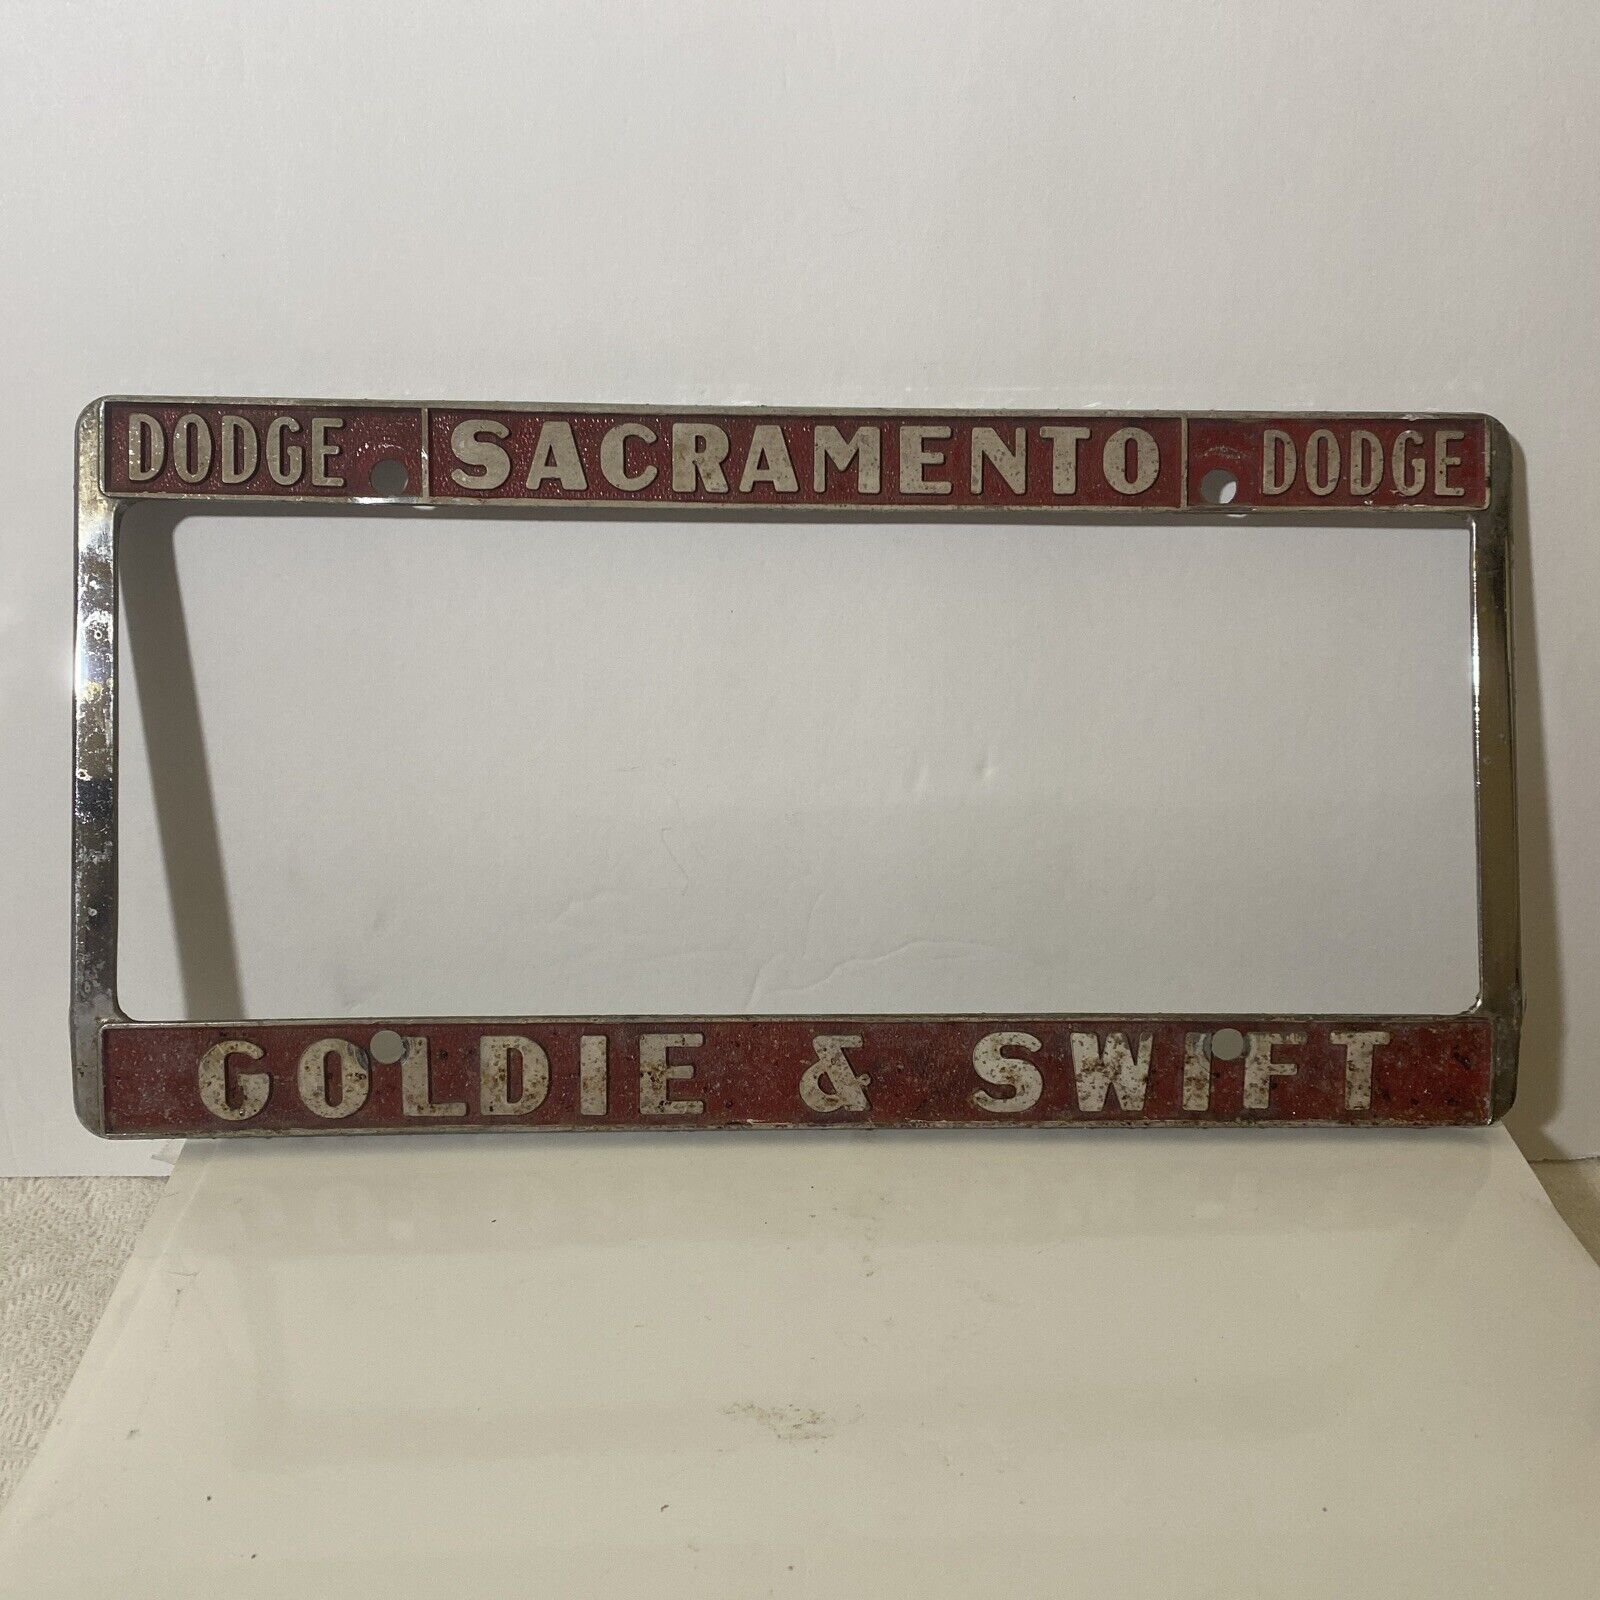 Vintage Sacramento Goldie &Swift Dodge Metal Embossed License Plate Frame